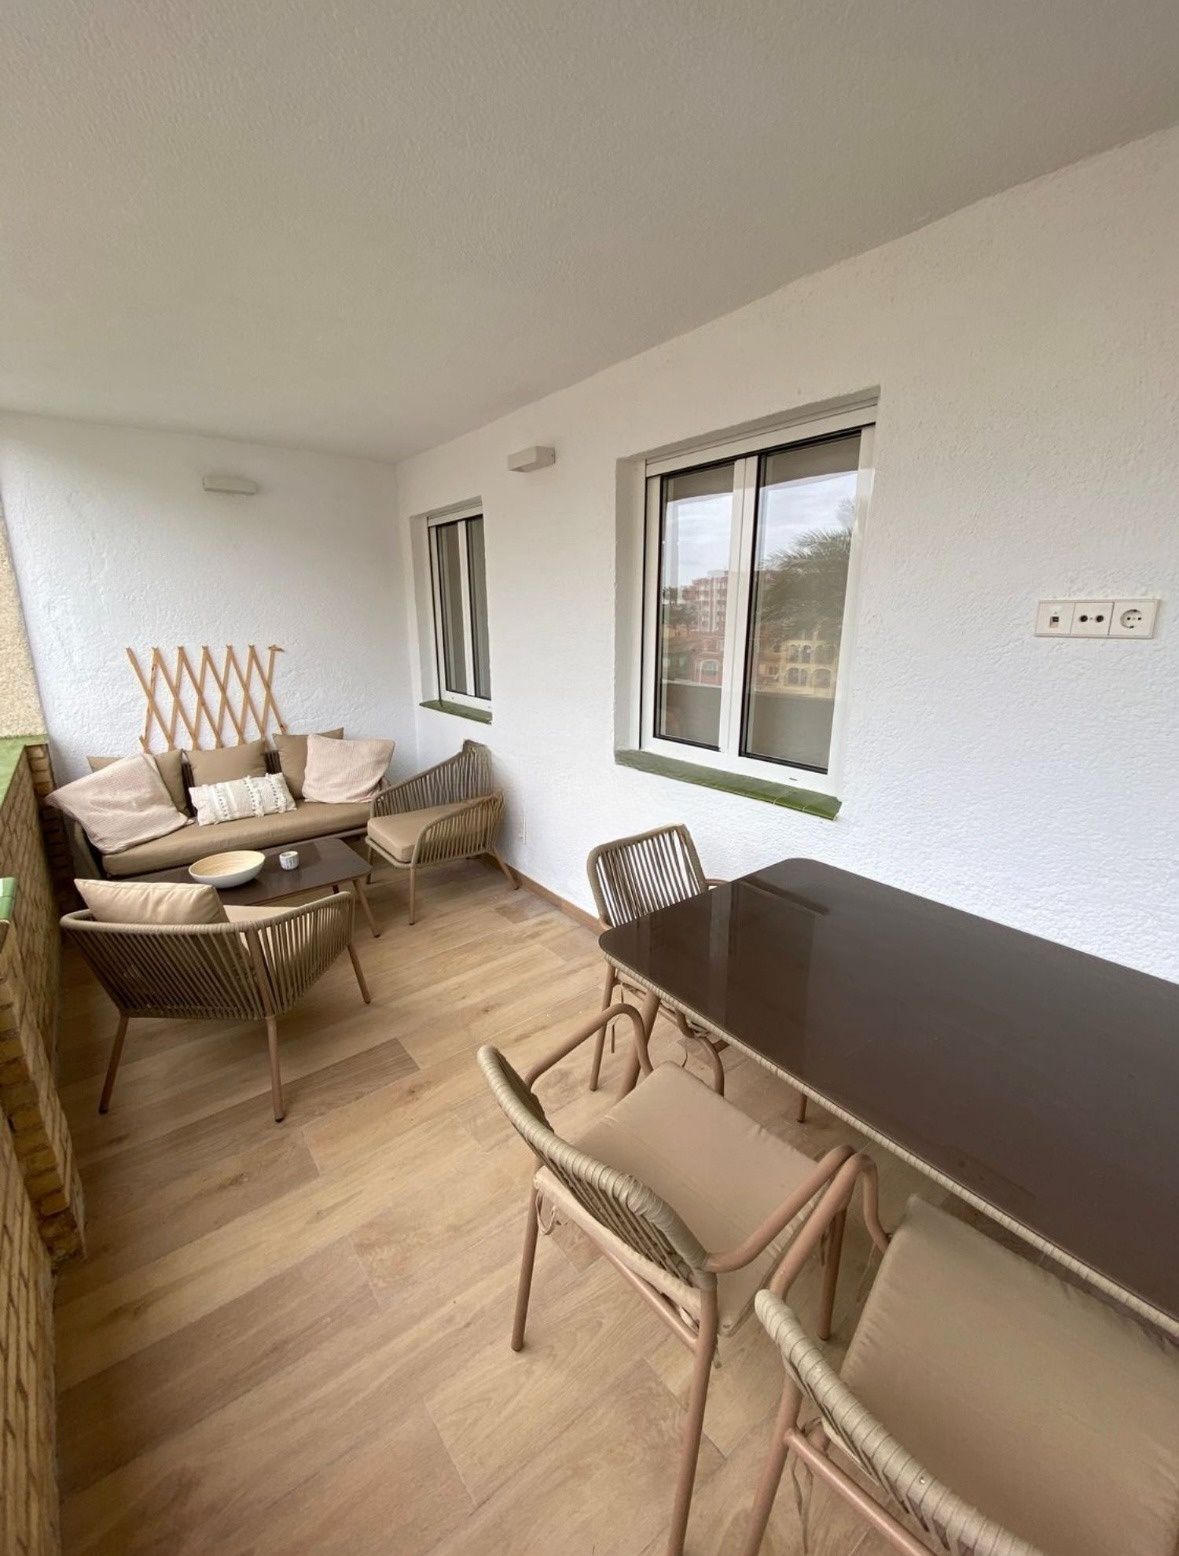 Apartament de 3 dormitoris totalment reformat a la venda a Xàbia Arenal